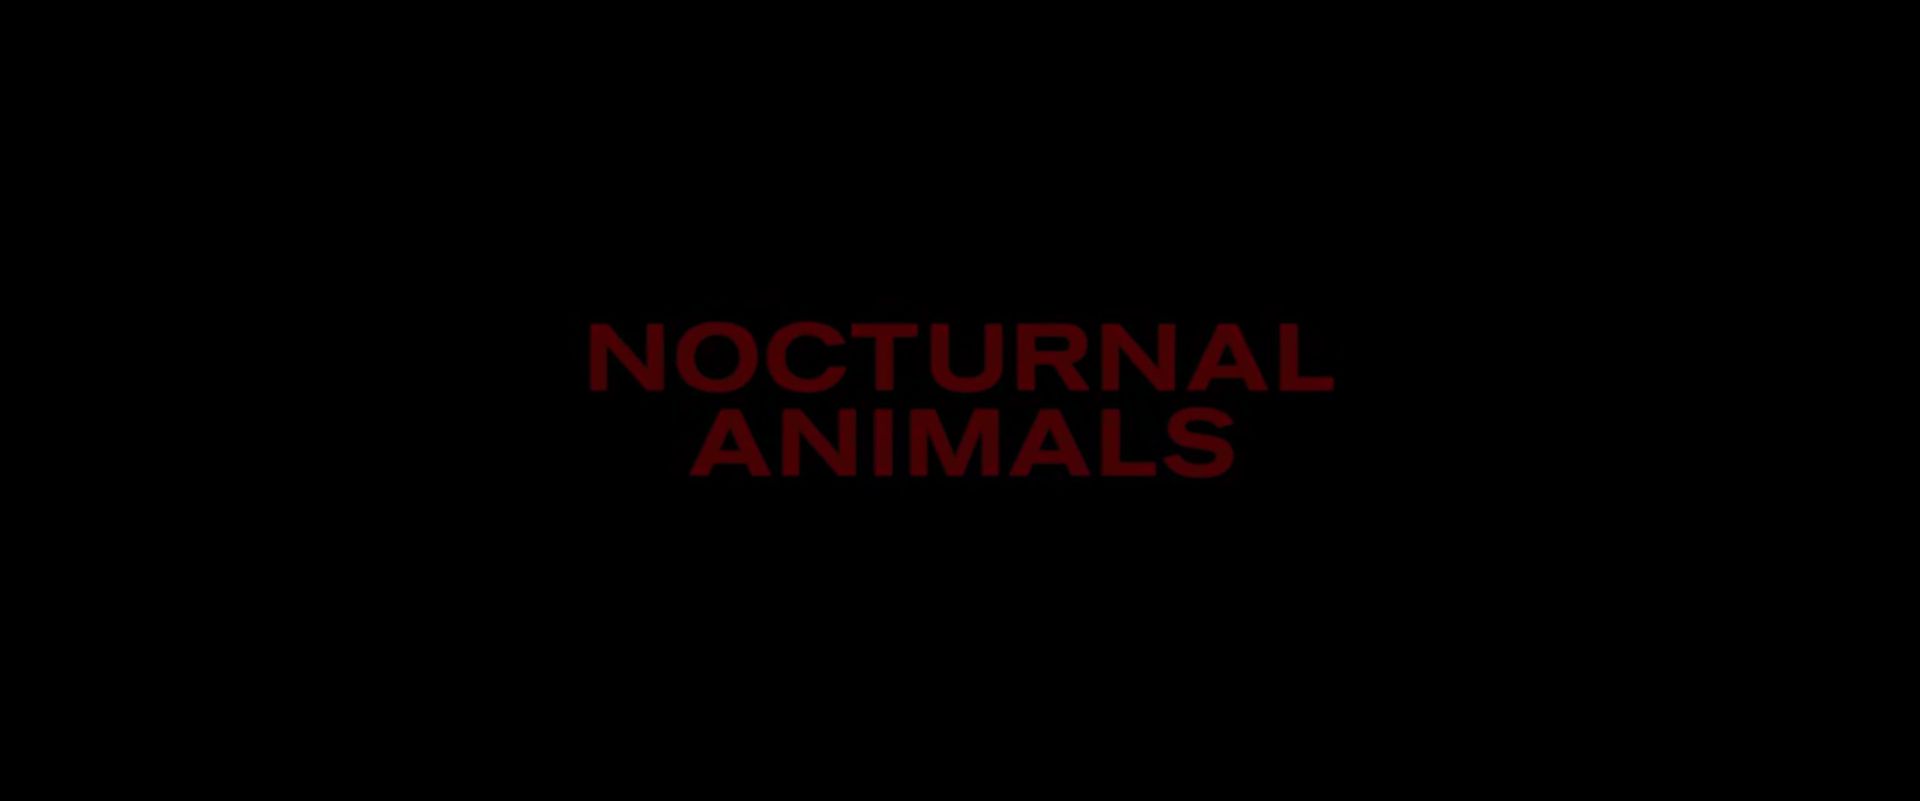 Nocturnal Animals Movie Online 2016